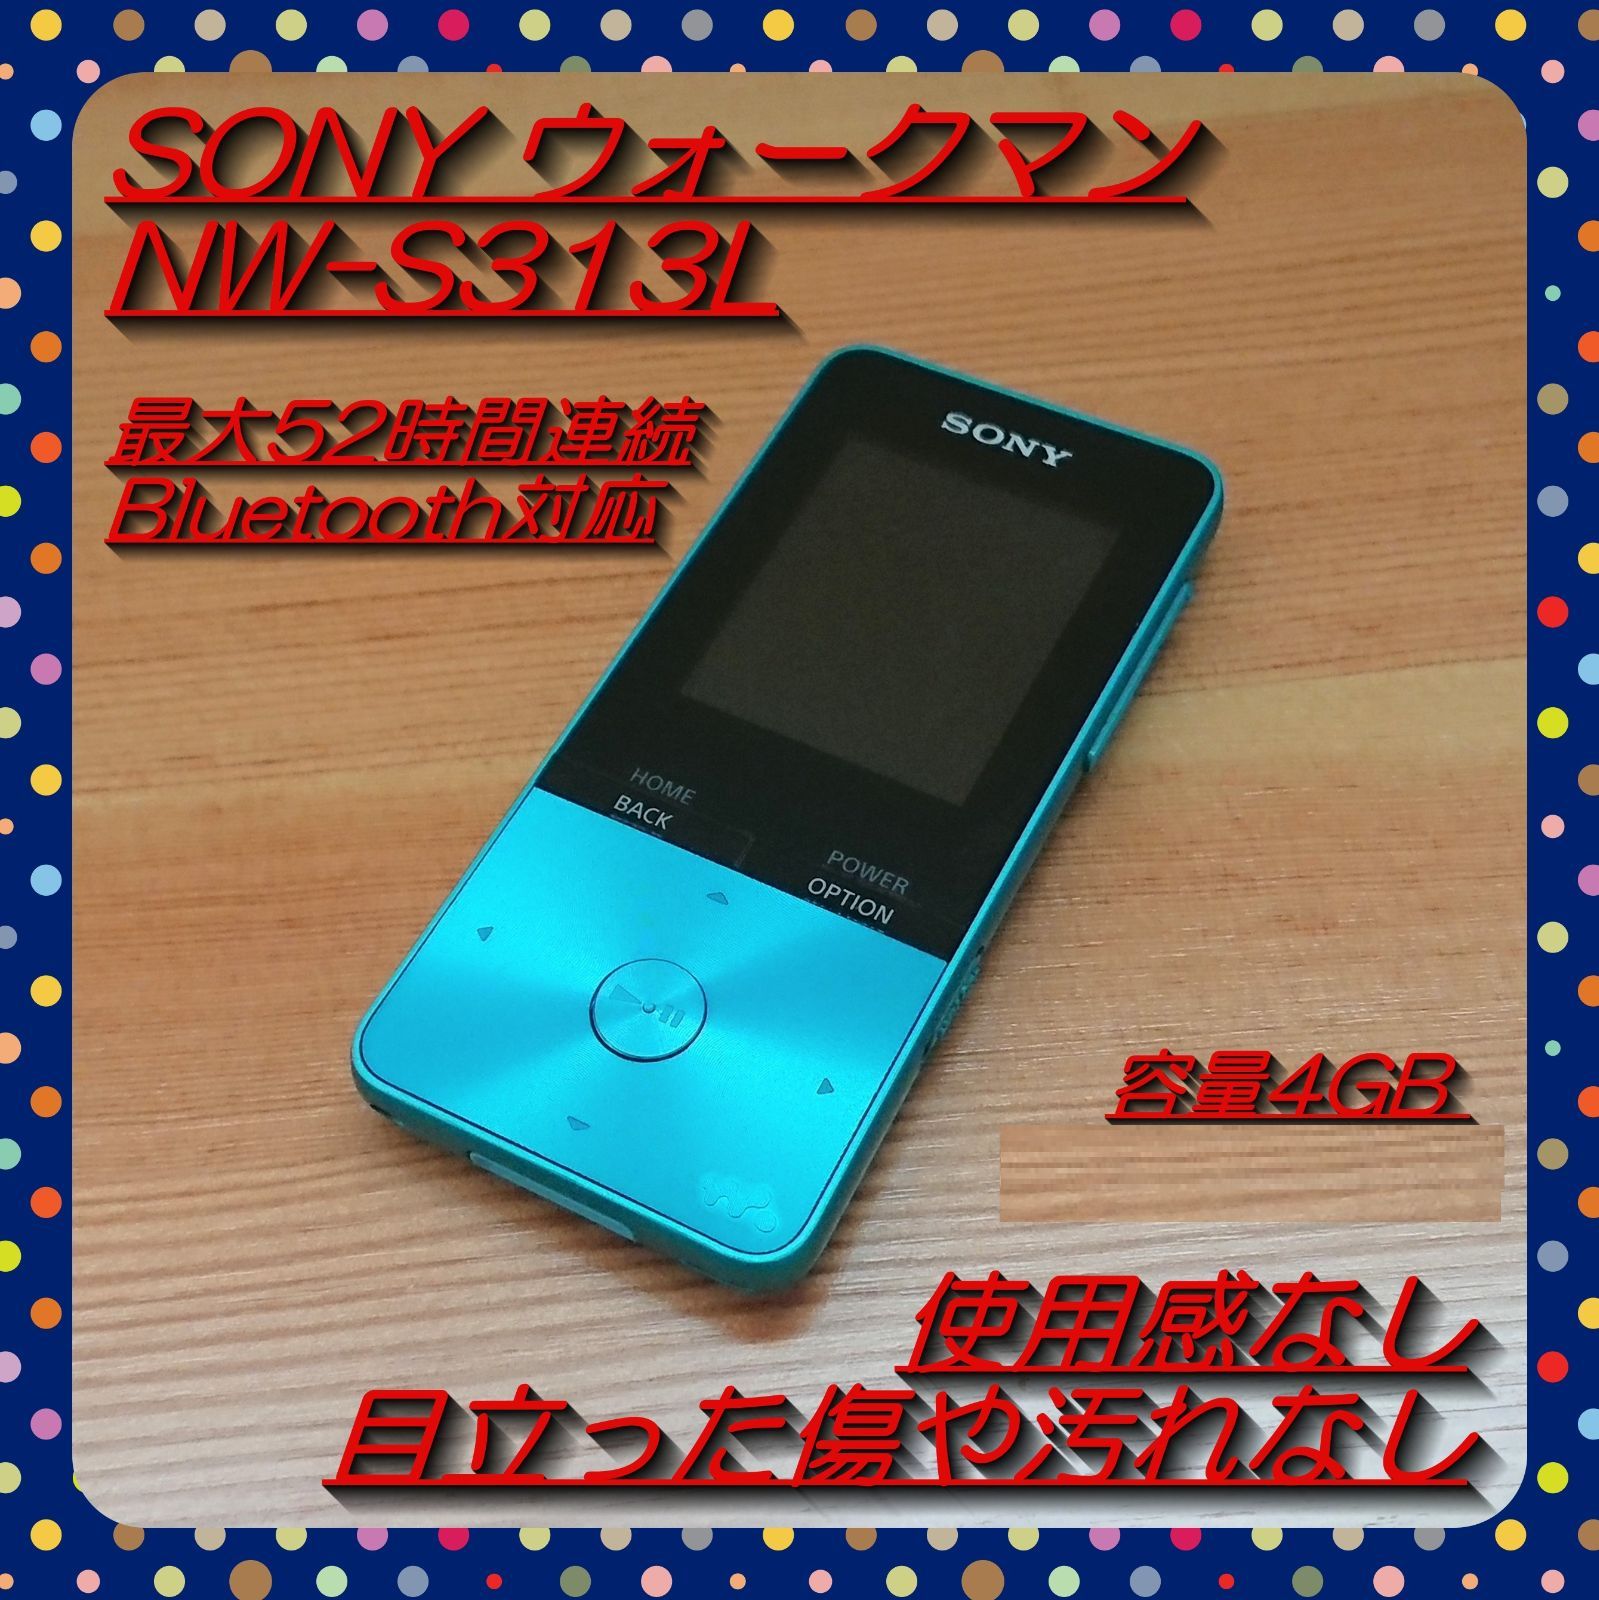 ソニー ウォークマン Sシリーズ 4GB NW-S313K : MP3プレーヤー